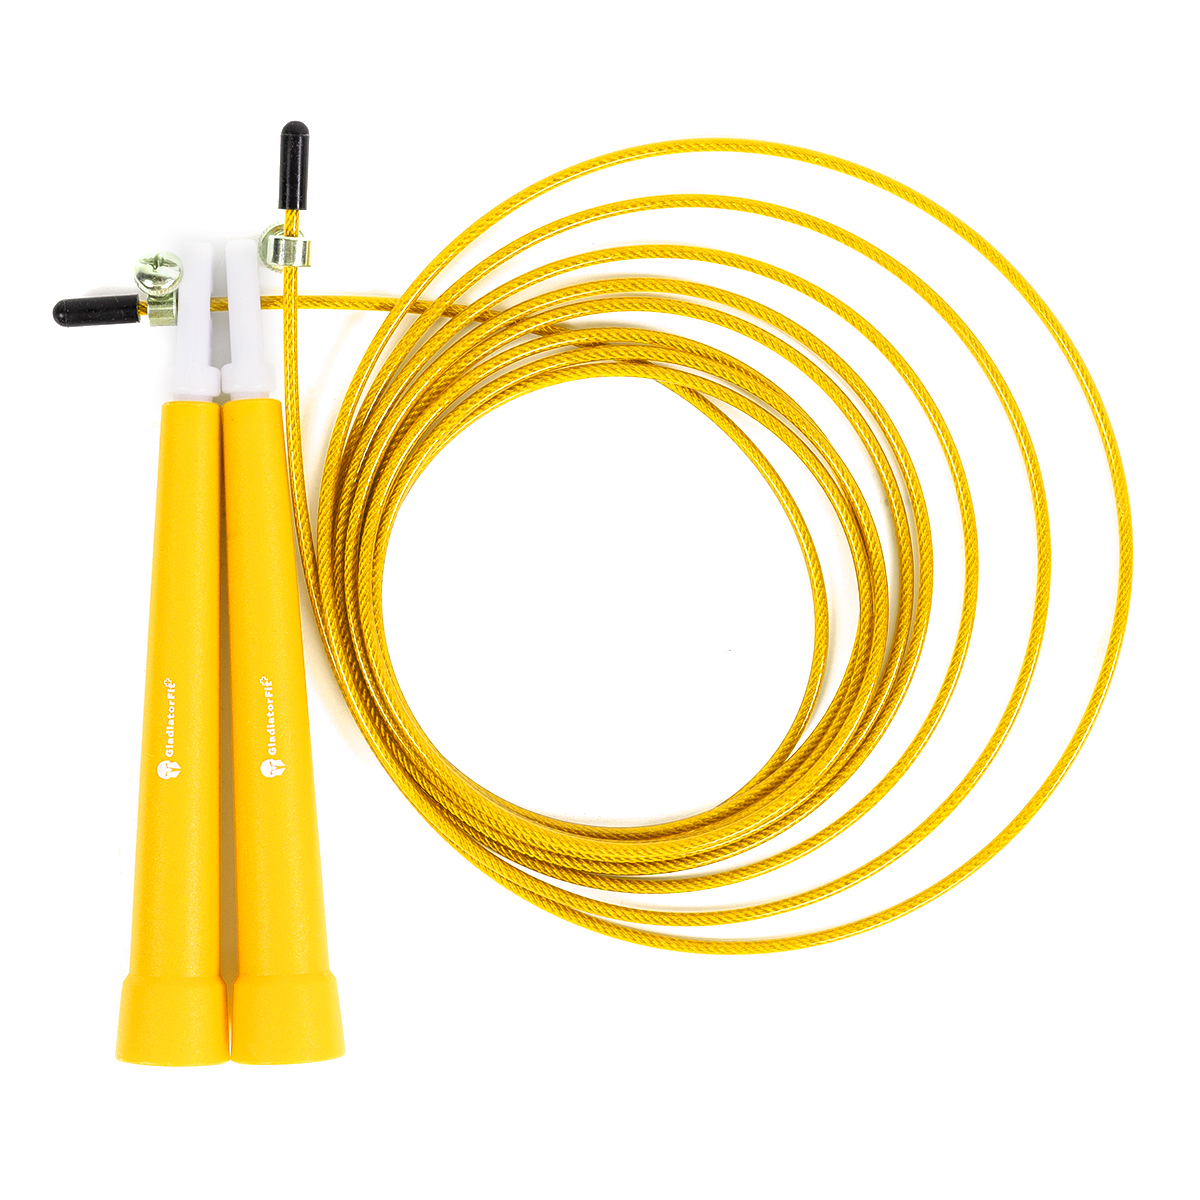 Cuerda De Saltar De Plástico 180cm Ajustable Con  Bolsa Gladiatorfit - amarillo - 